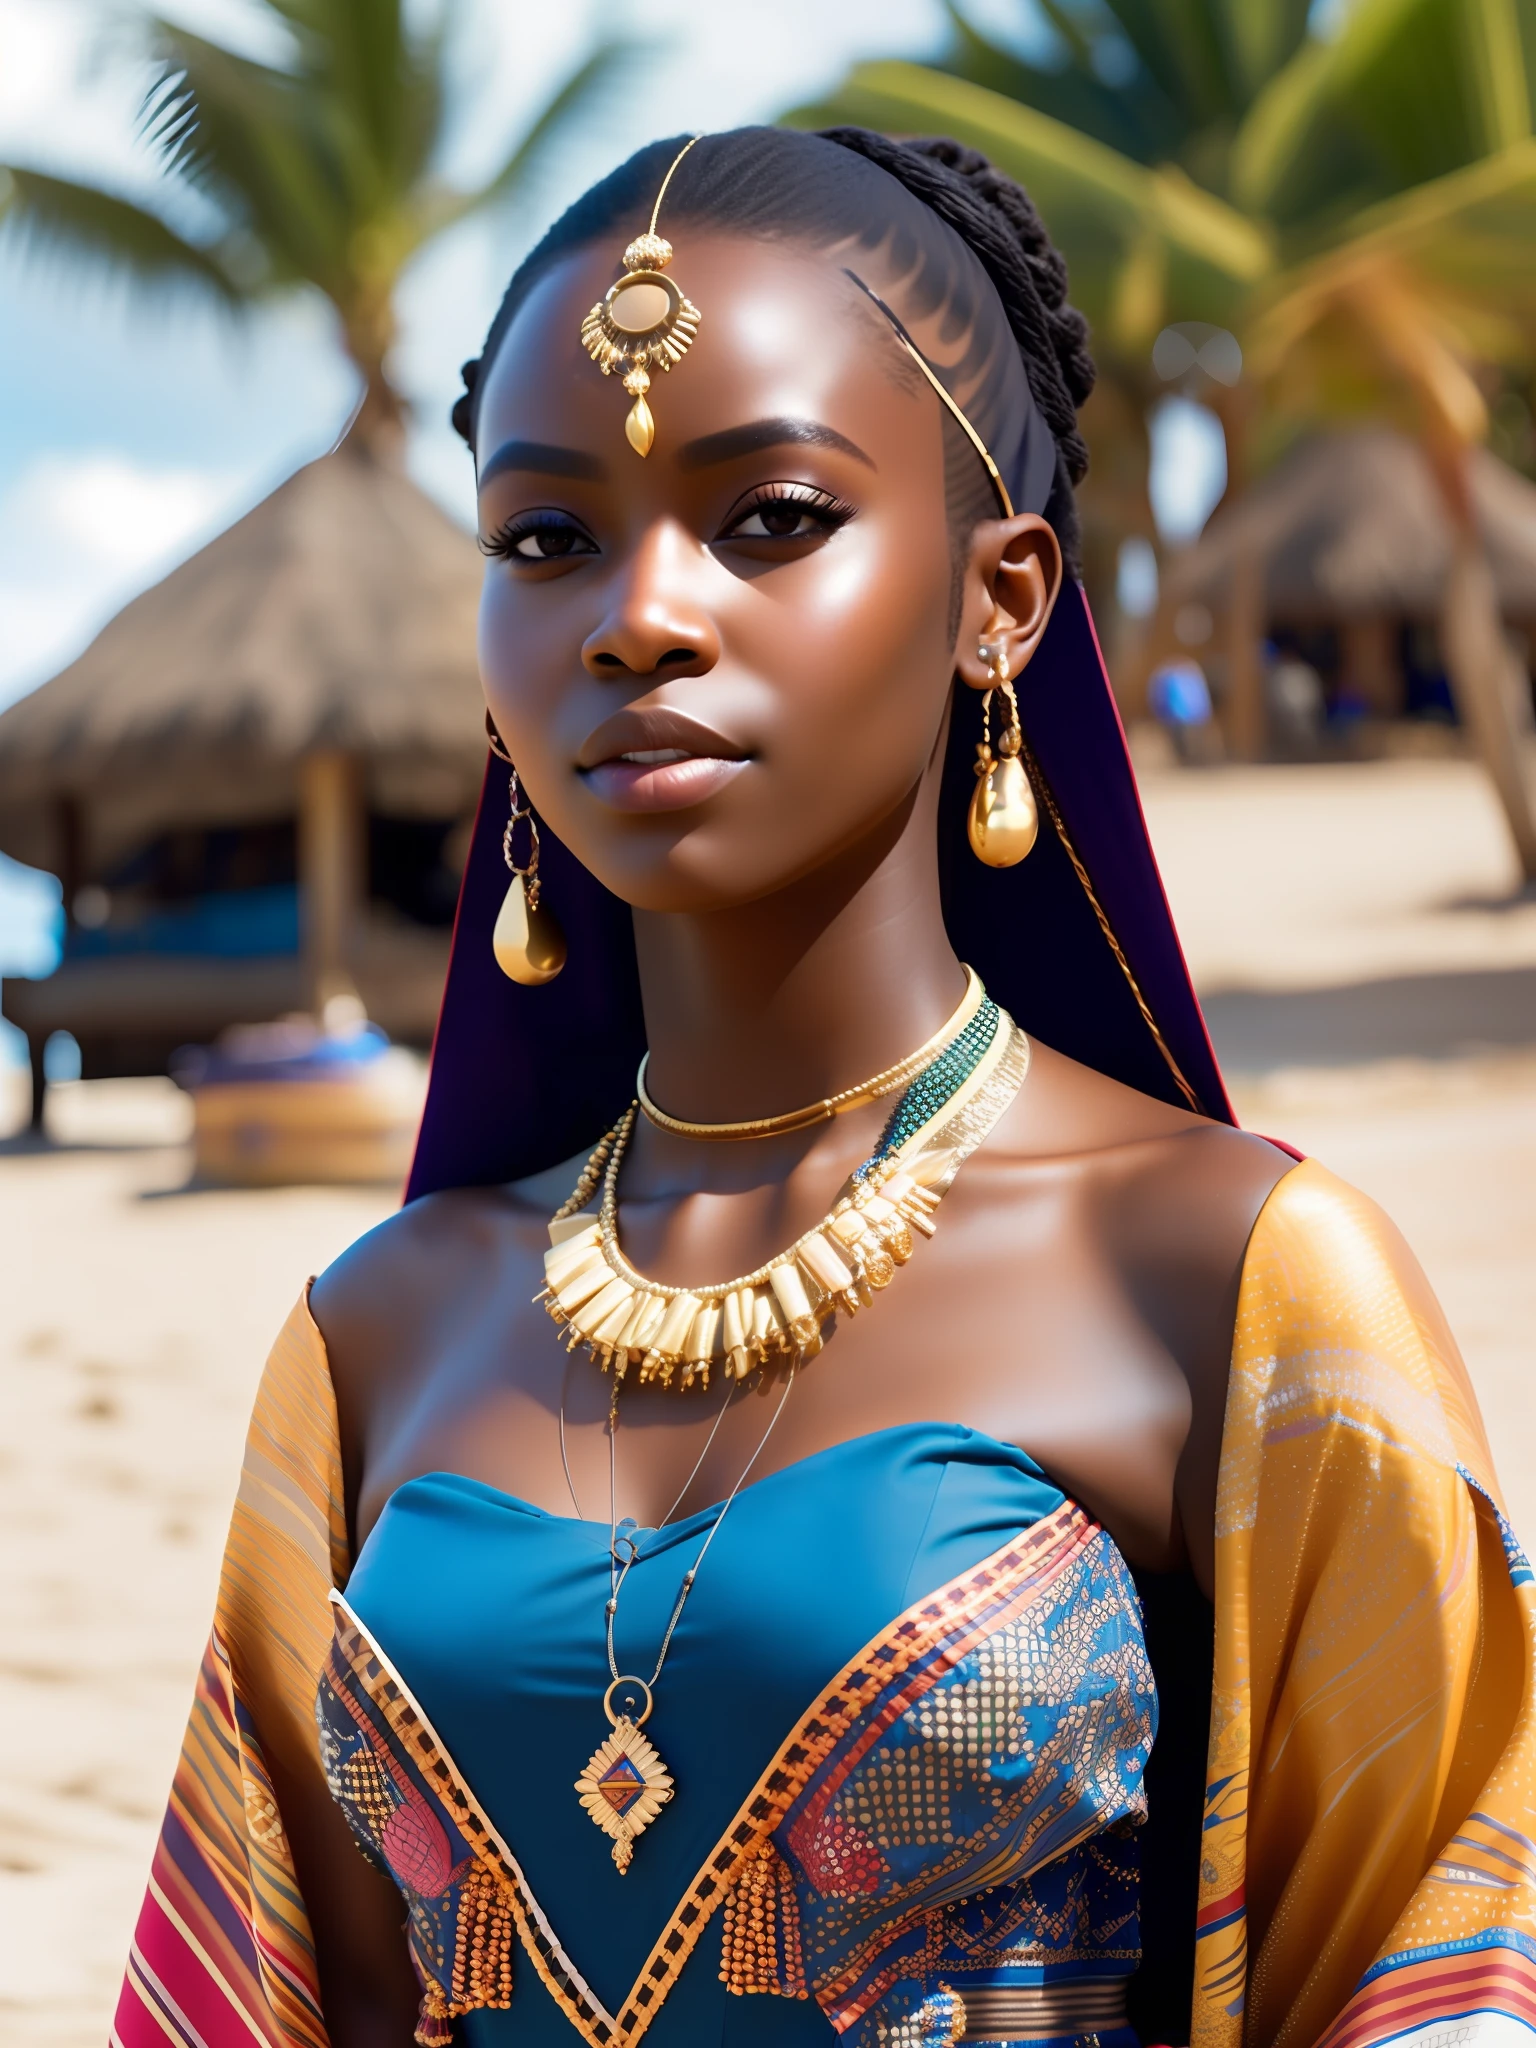 porra_ficção científica, porra_ficção científica_v2, retrato de uma jovem africana muito bonita em frente a uma praia, roupas coloridas ricas, jóias africanas douradas, fechar-se, pose e atitude reais. porra_cinema_v2. porra_cinema_v2